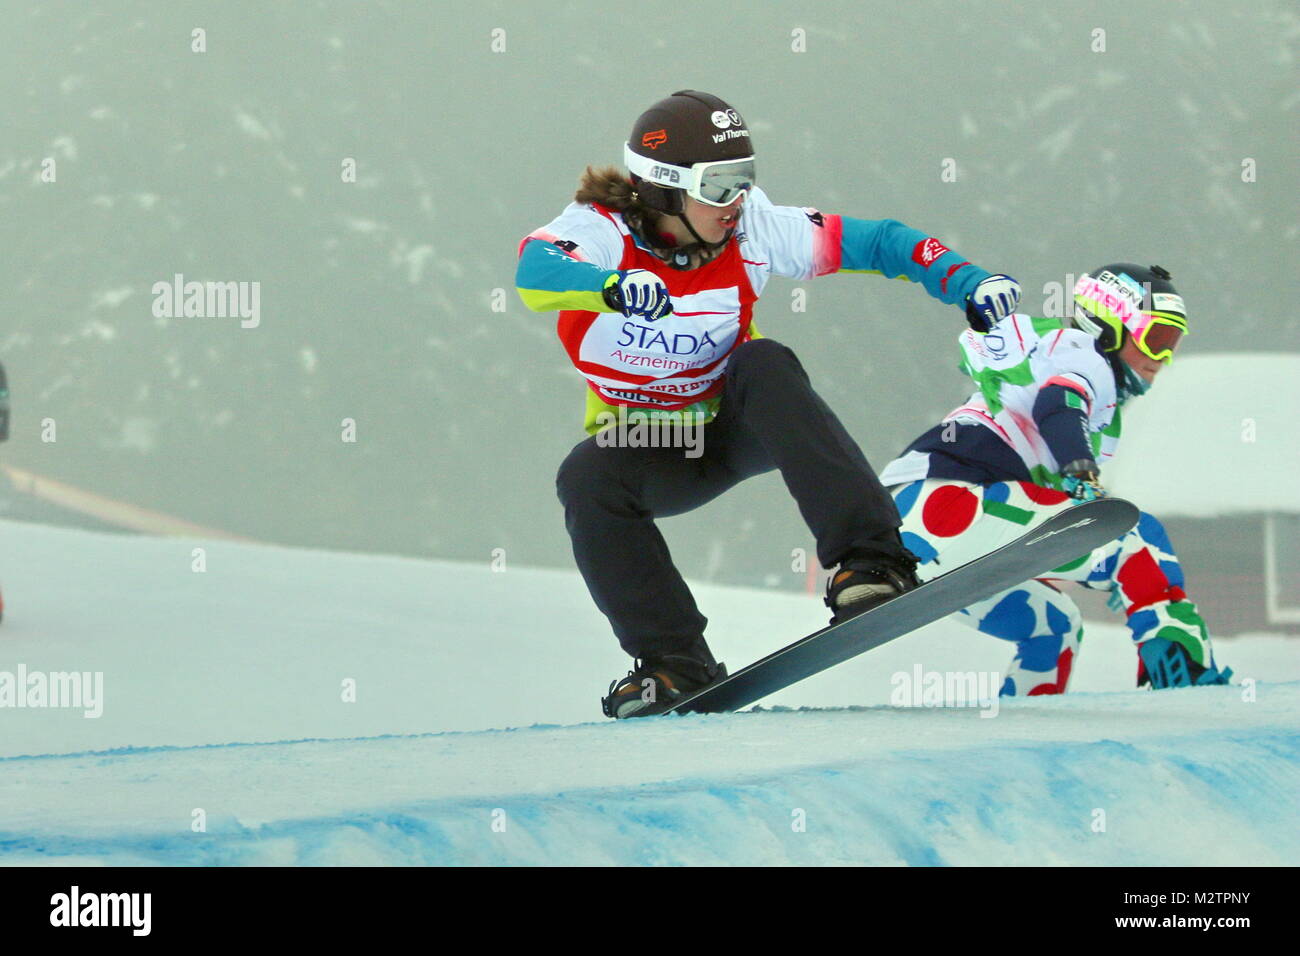 Aktion und coole Sprünge sind beim Snowboardcross beim  FIS Weltcup Snowboard SBX 2016 am Feldberg garantiert Stock Photo